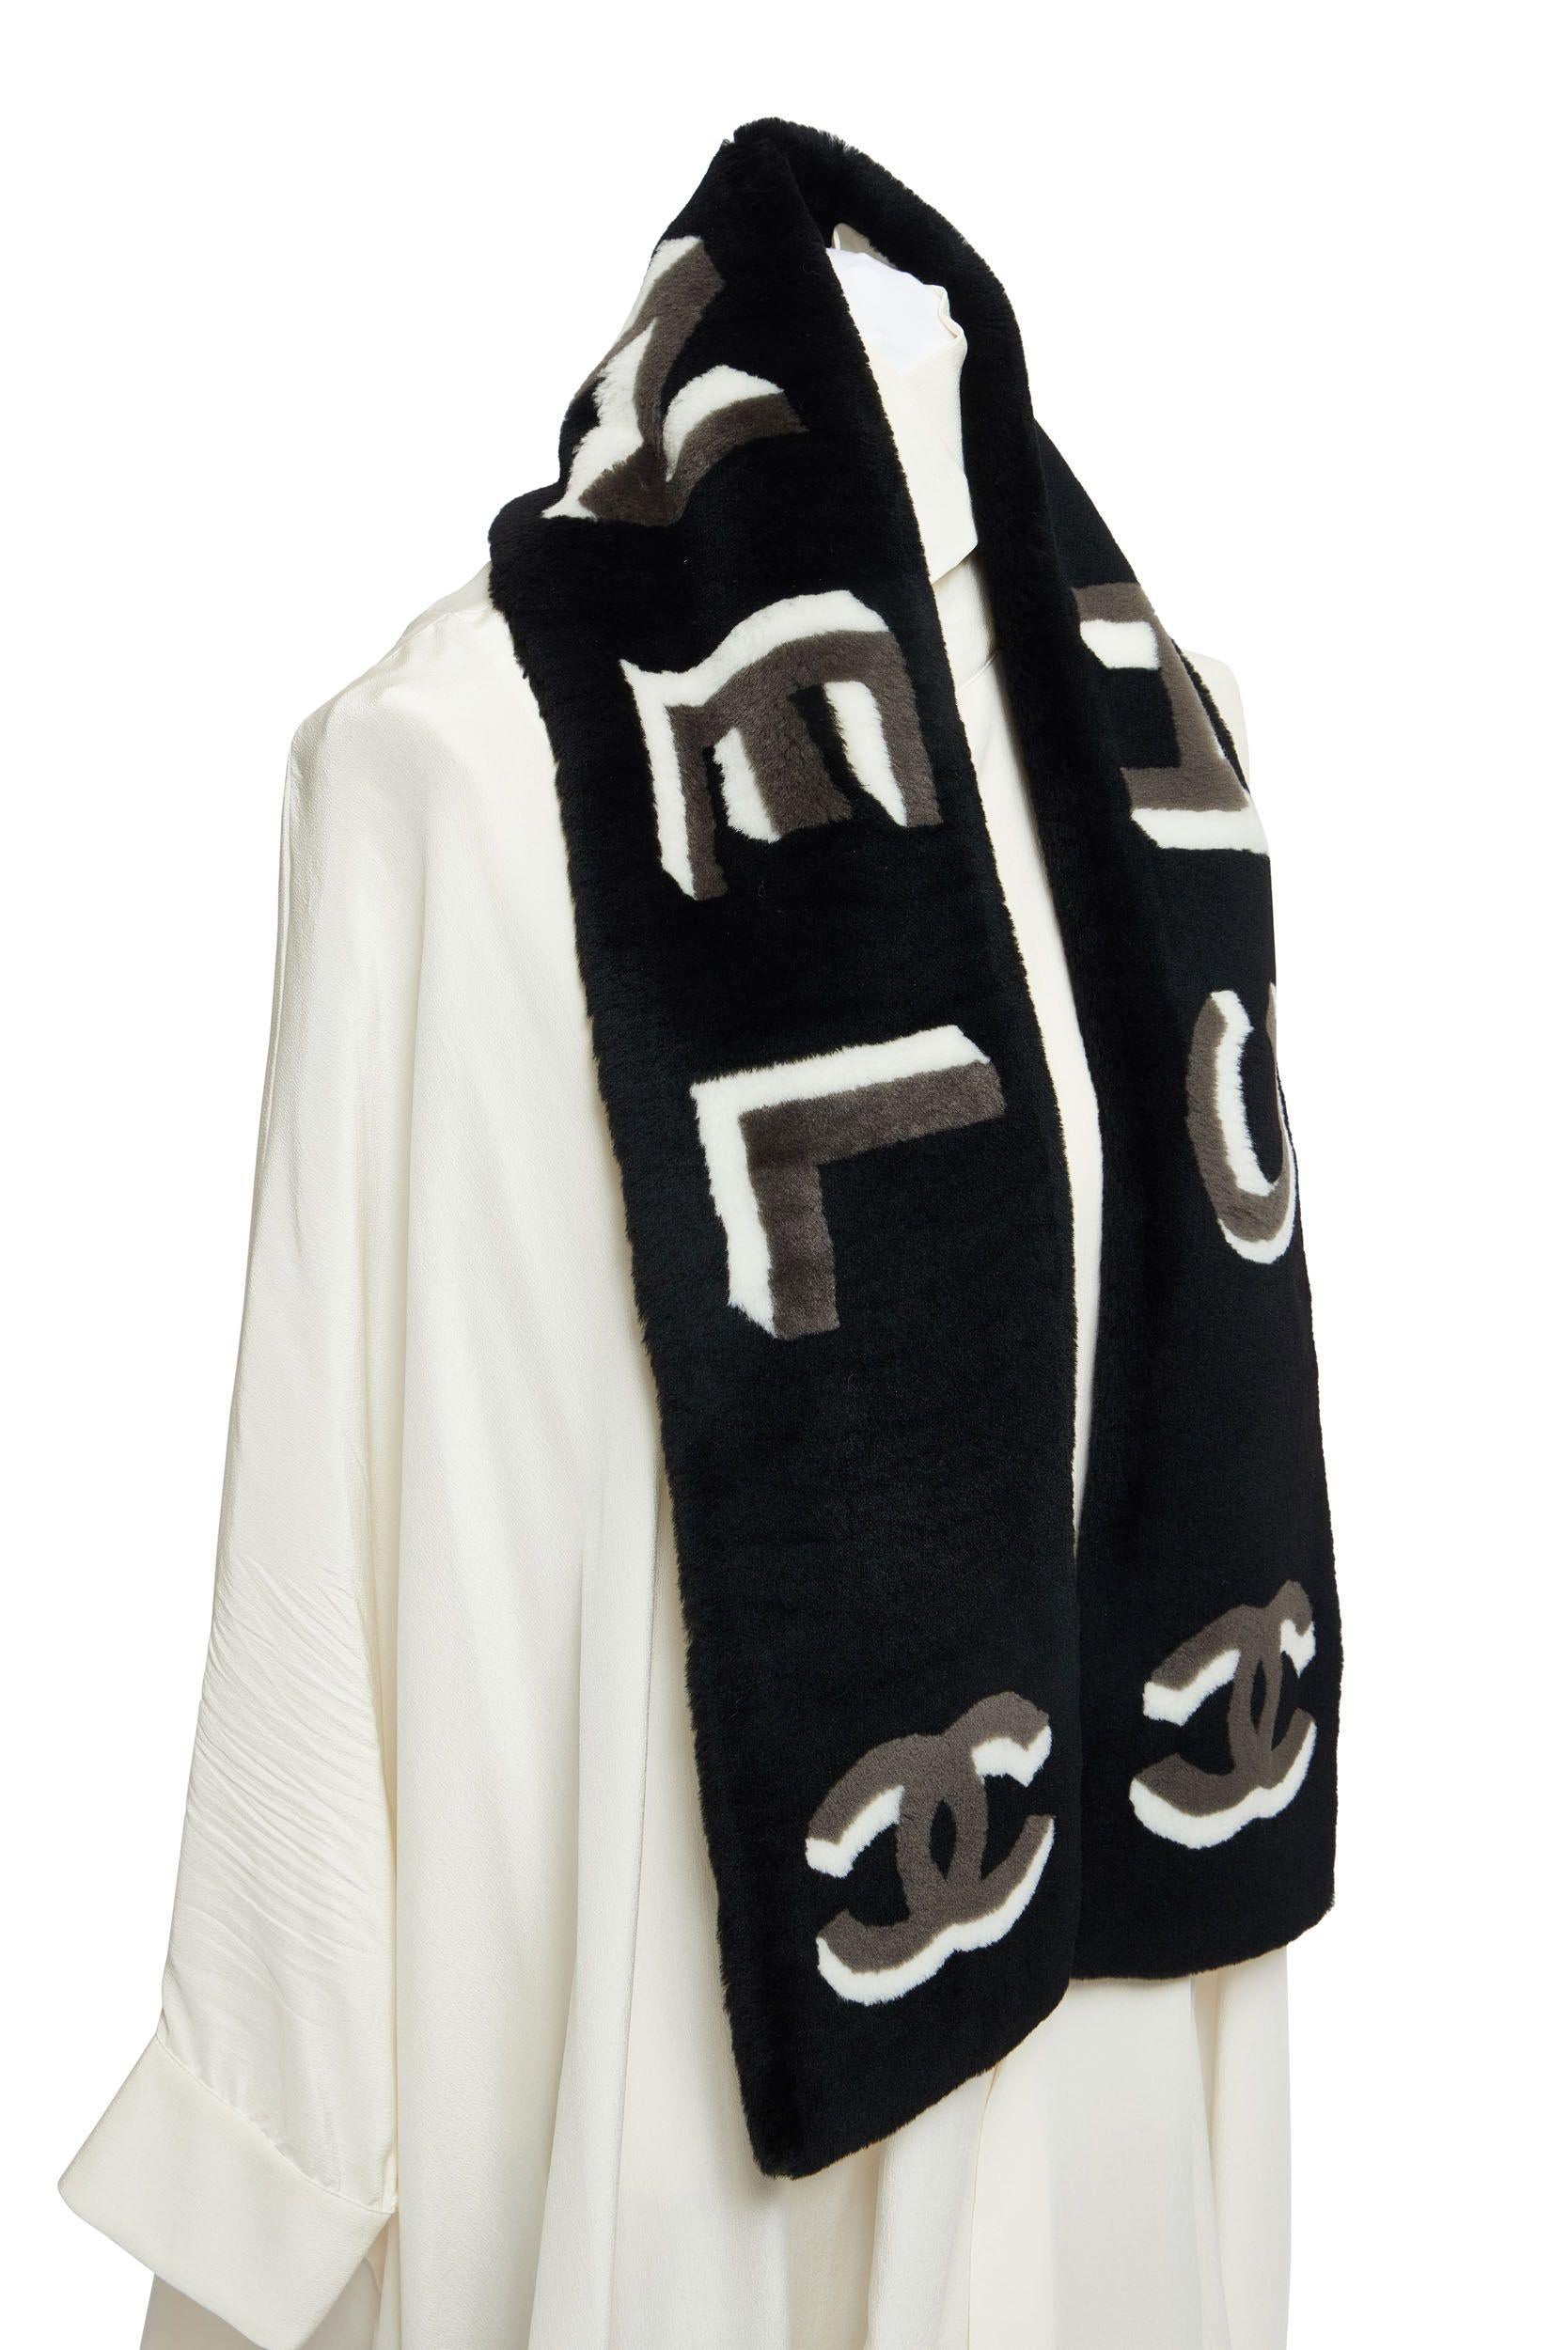 Nouvelle écharpe Chanel en peau de mouton noire avec lettres Chanel et logo CC tridimensionnels blancs et gris. Doublure chaude en cachemire noir.